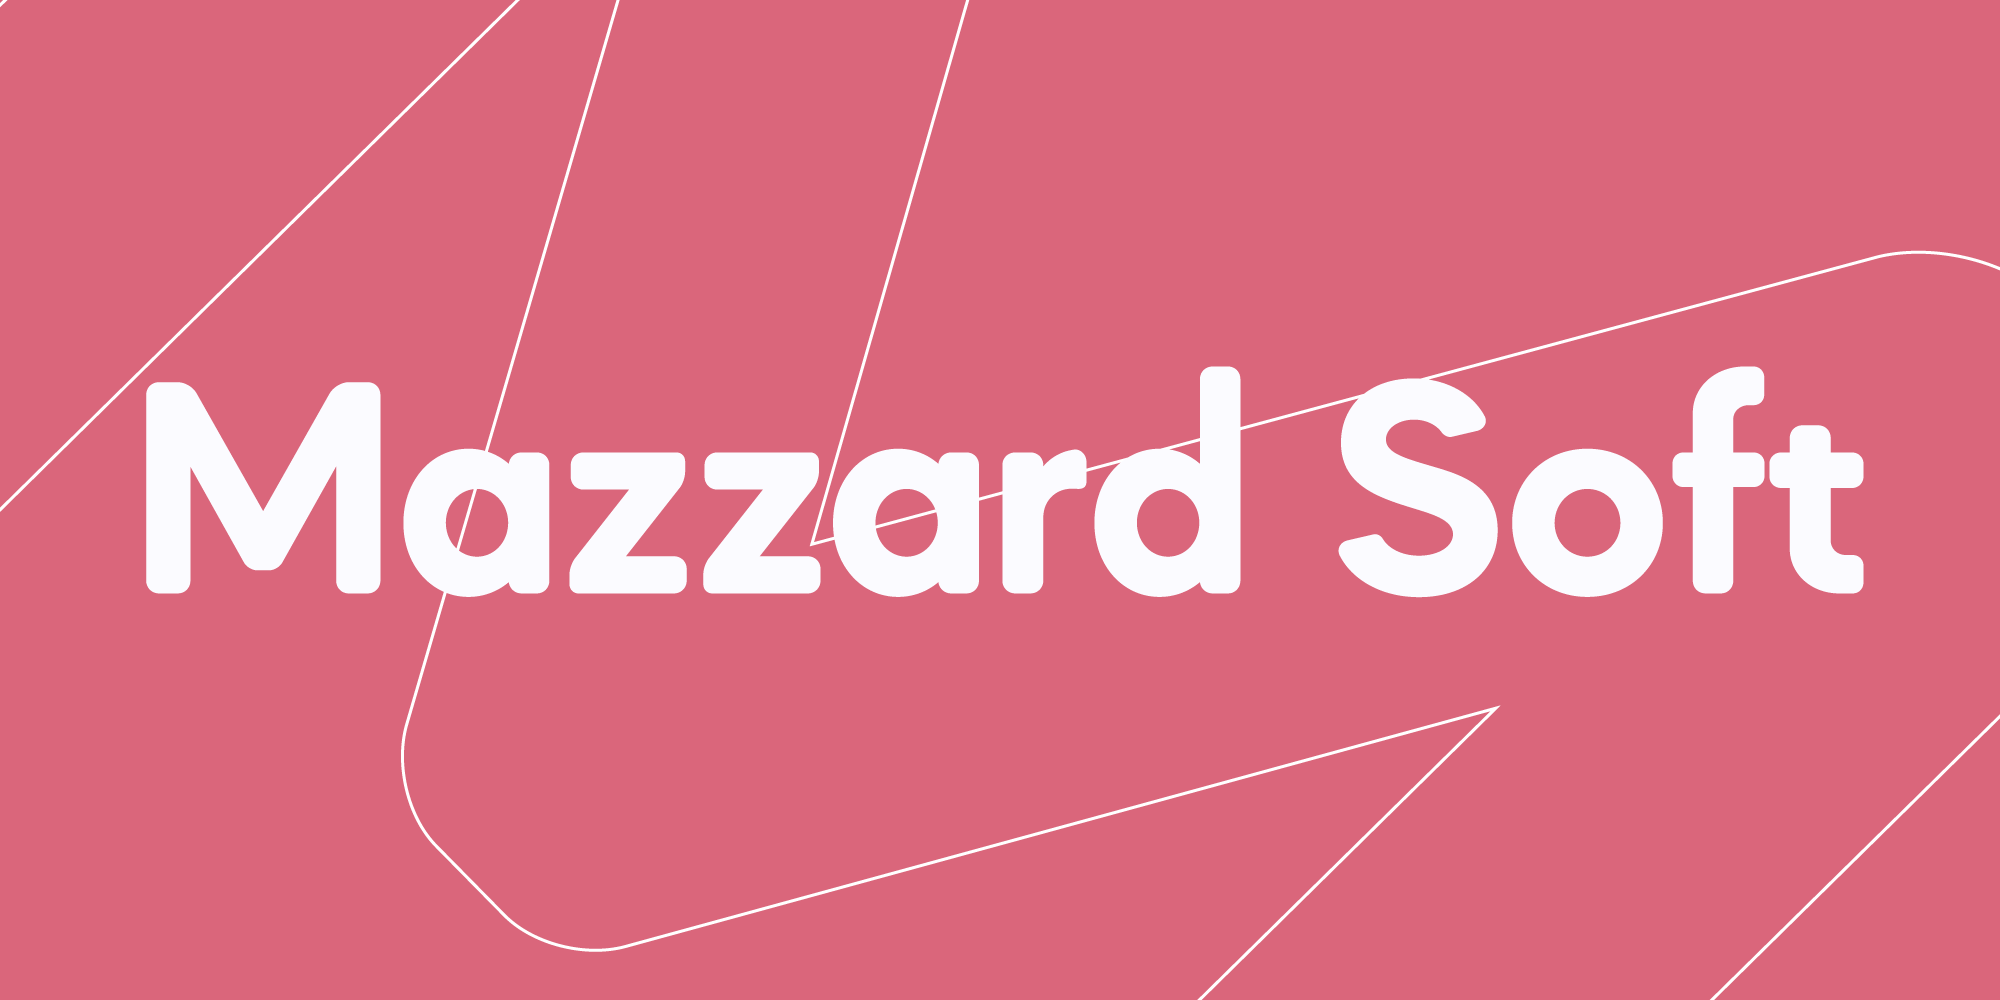 Mazzard Soft font